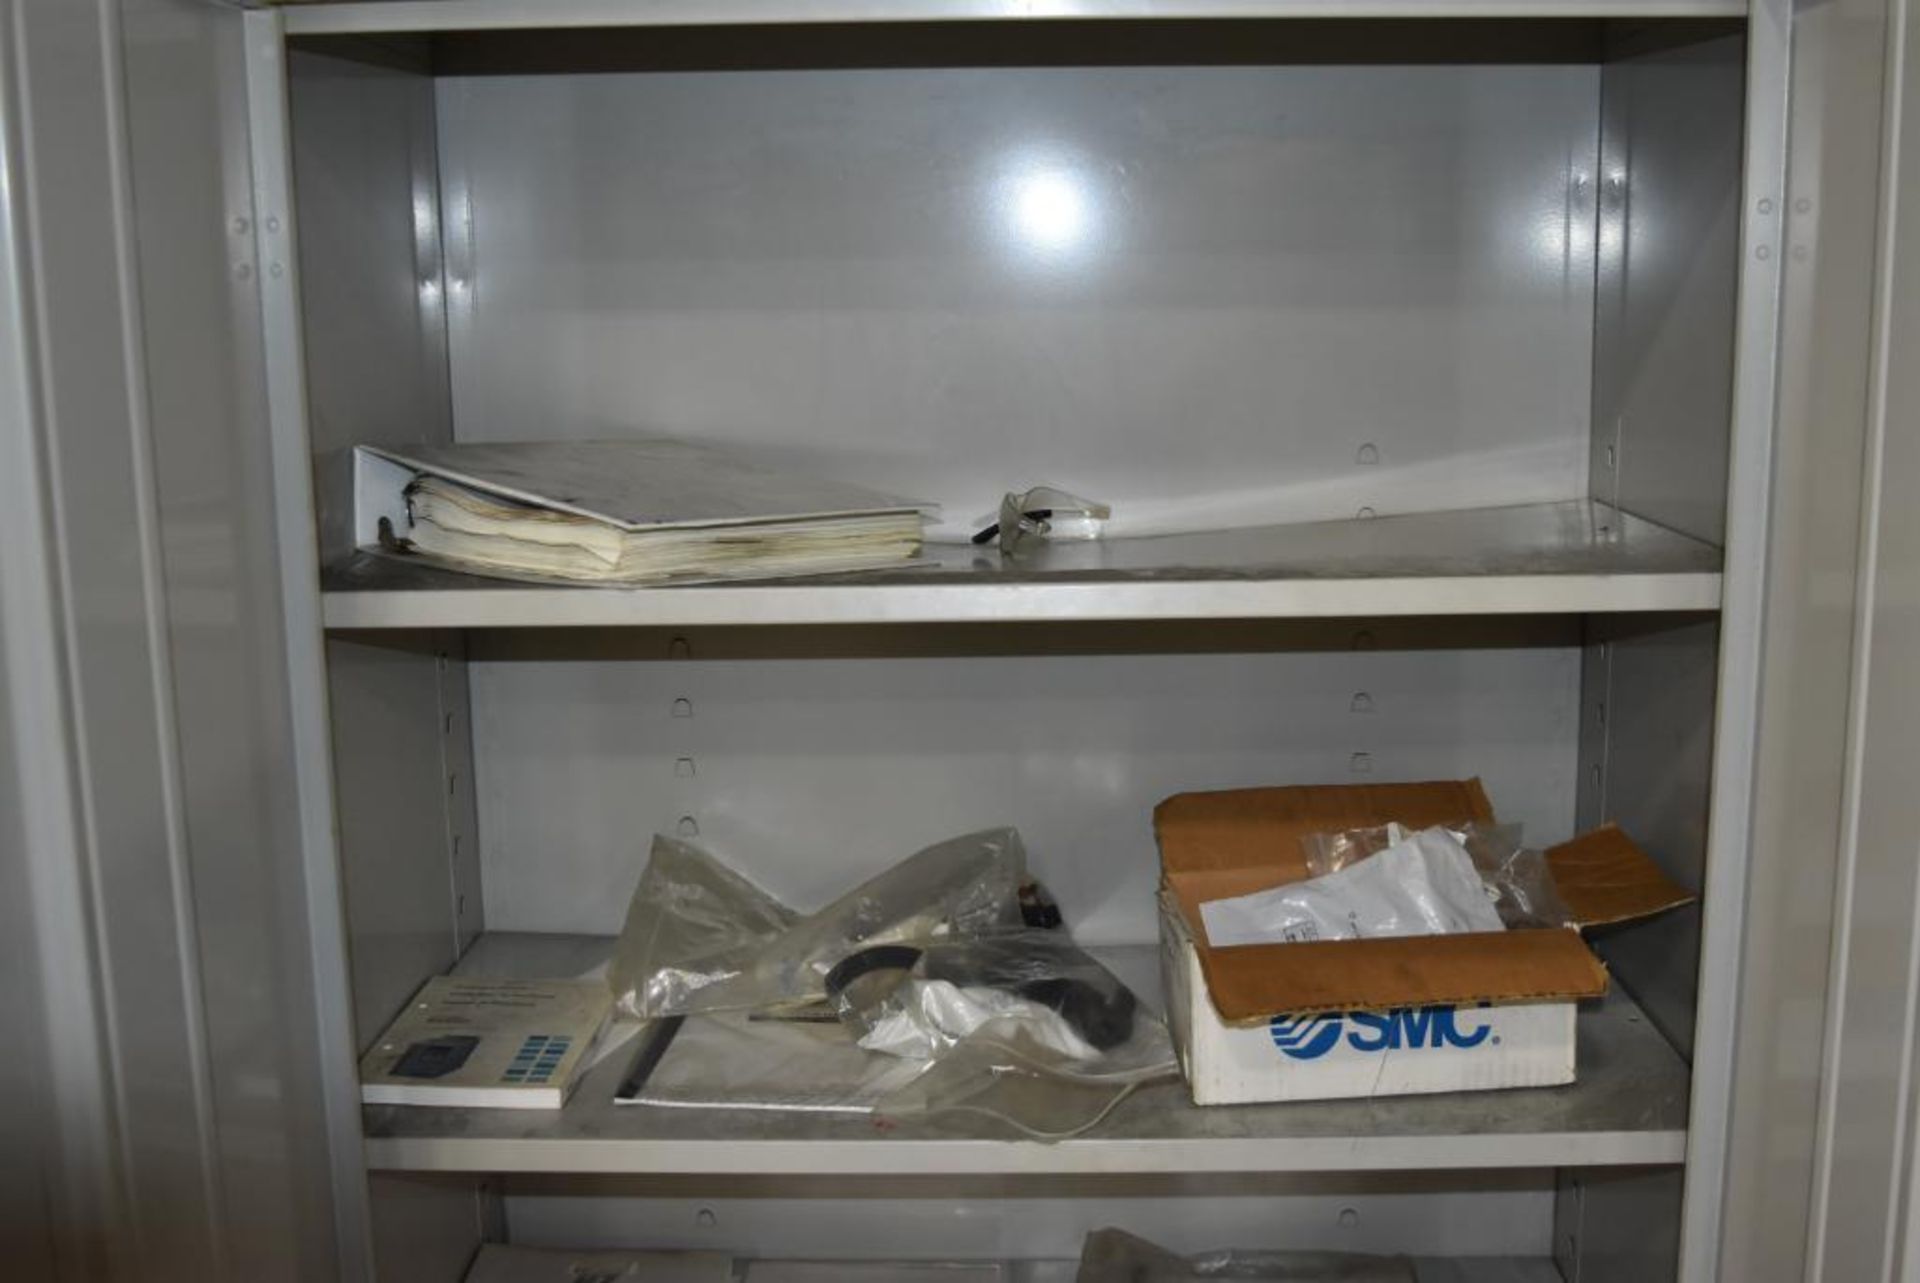 2-Door Metal Storage Cabinet w/ Contents - Image 3 of 3